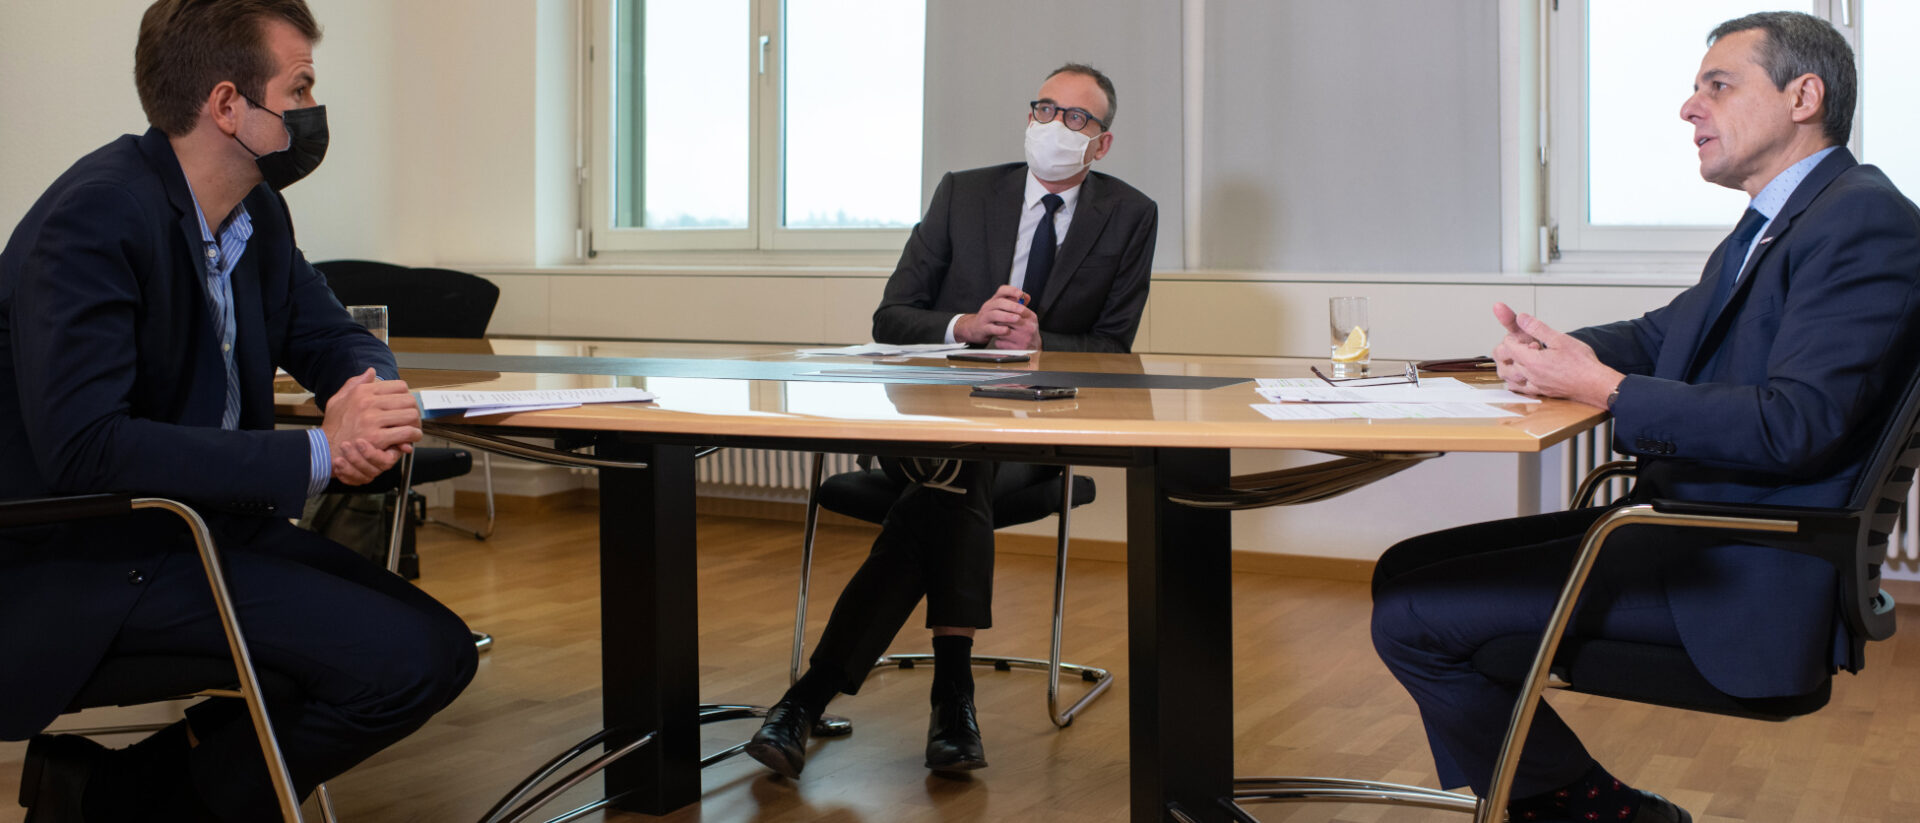 Bundesrat Ignazio Cassis (rechts) im Gespräch mit Raphael Rauch (links). In der Mitte Cassis' Sprecher Michael Steiner.